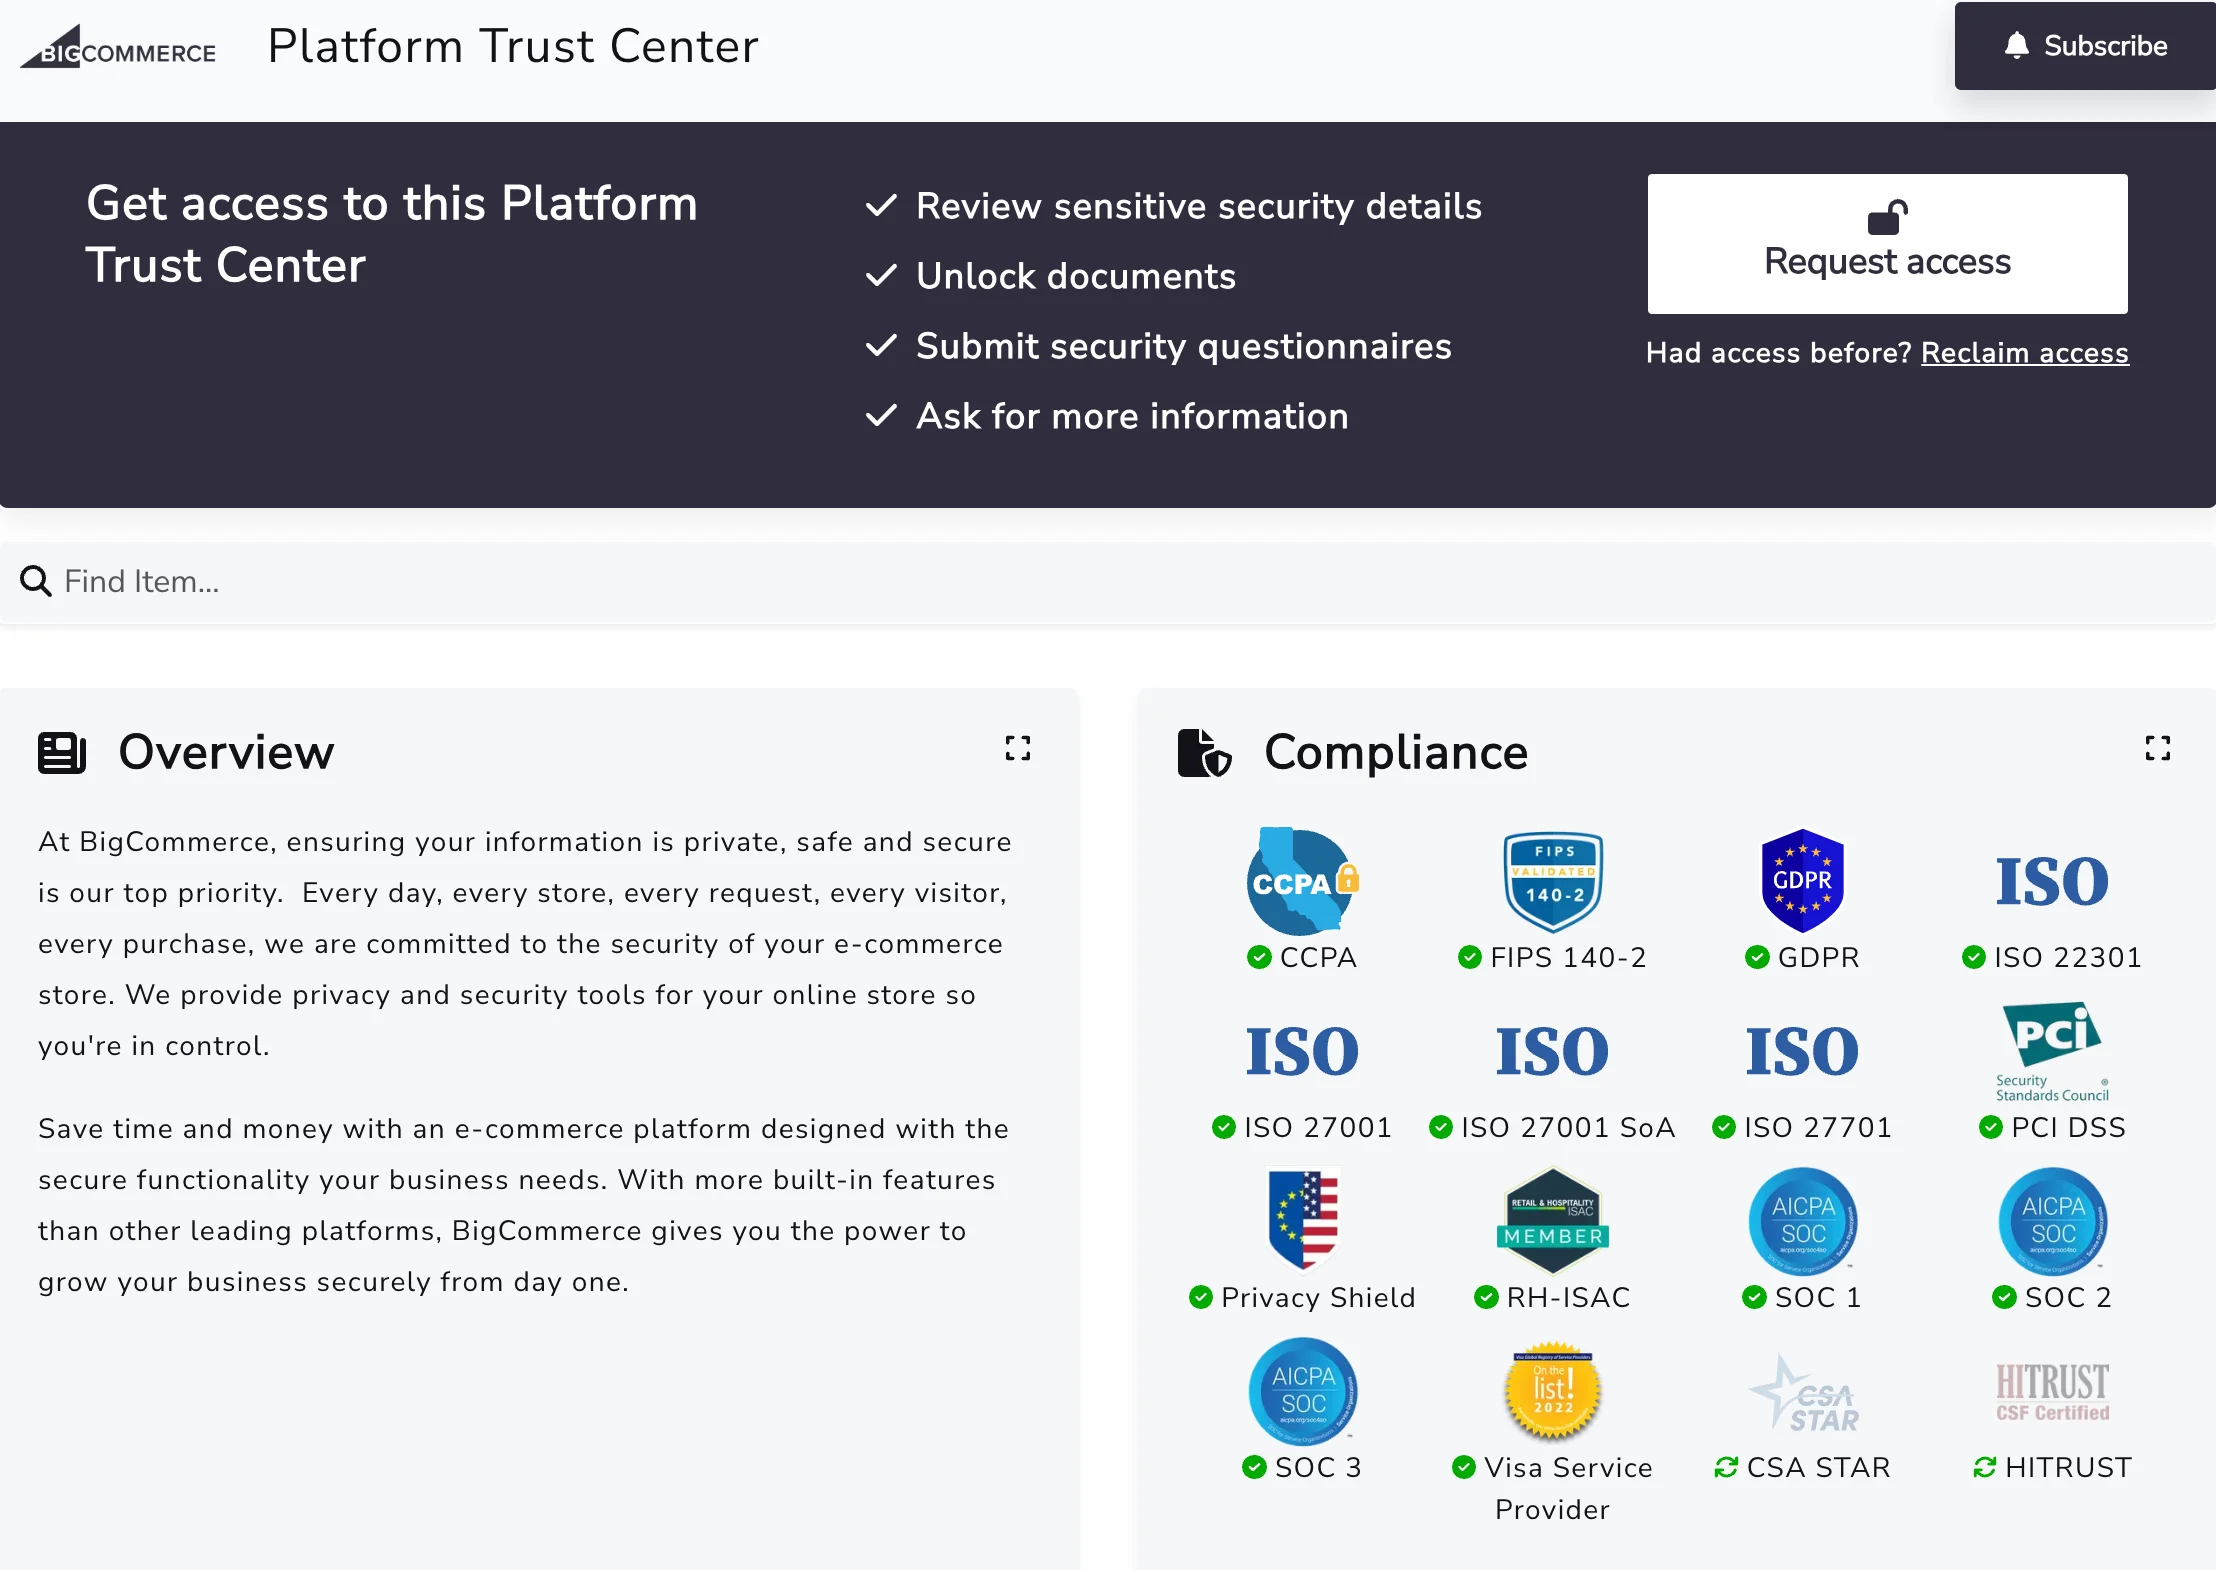 BigCommerce Platform Trust Center